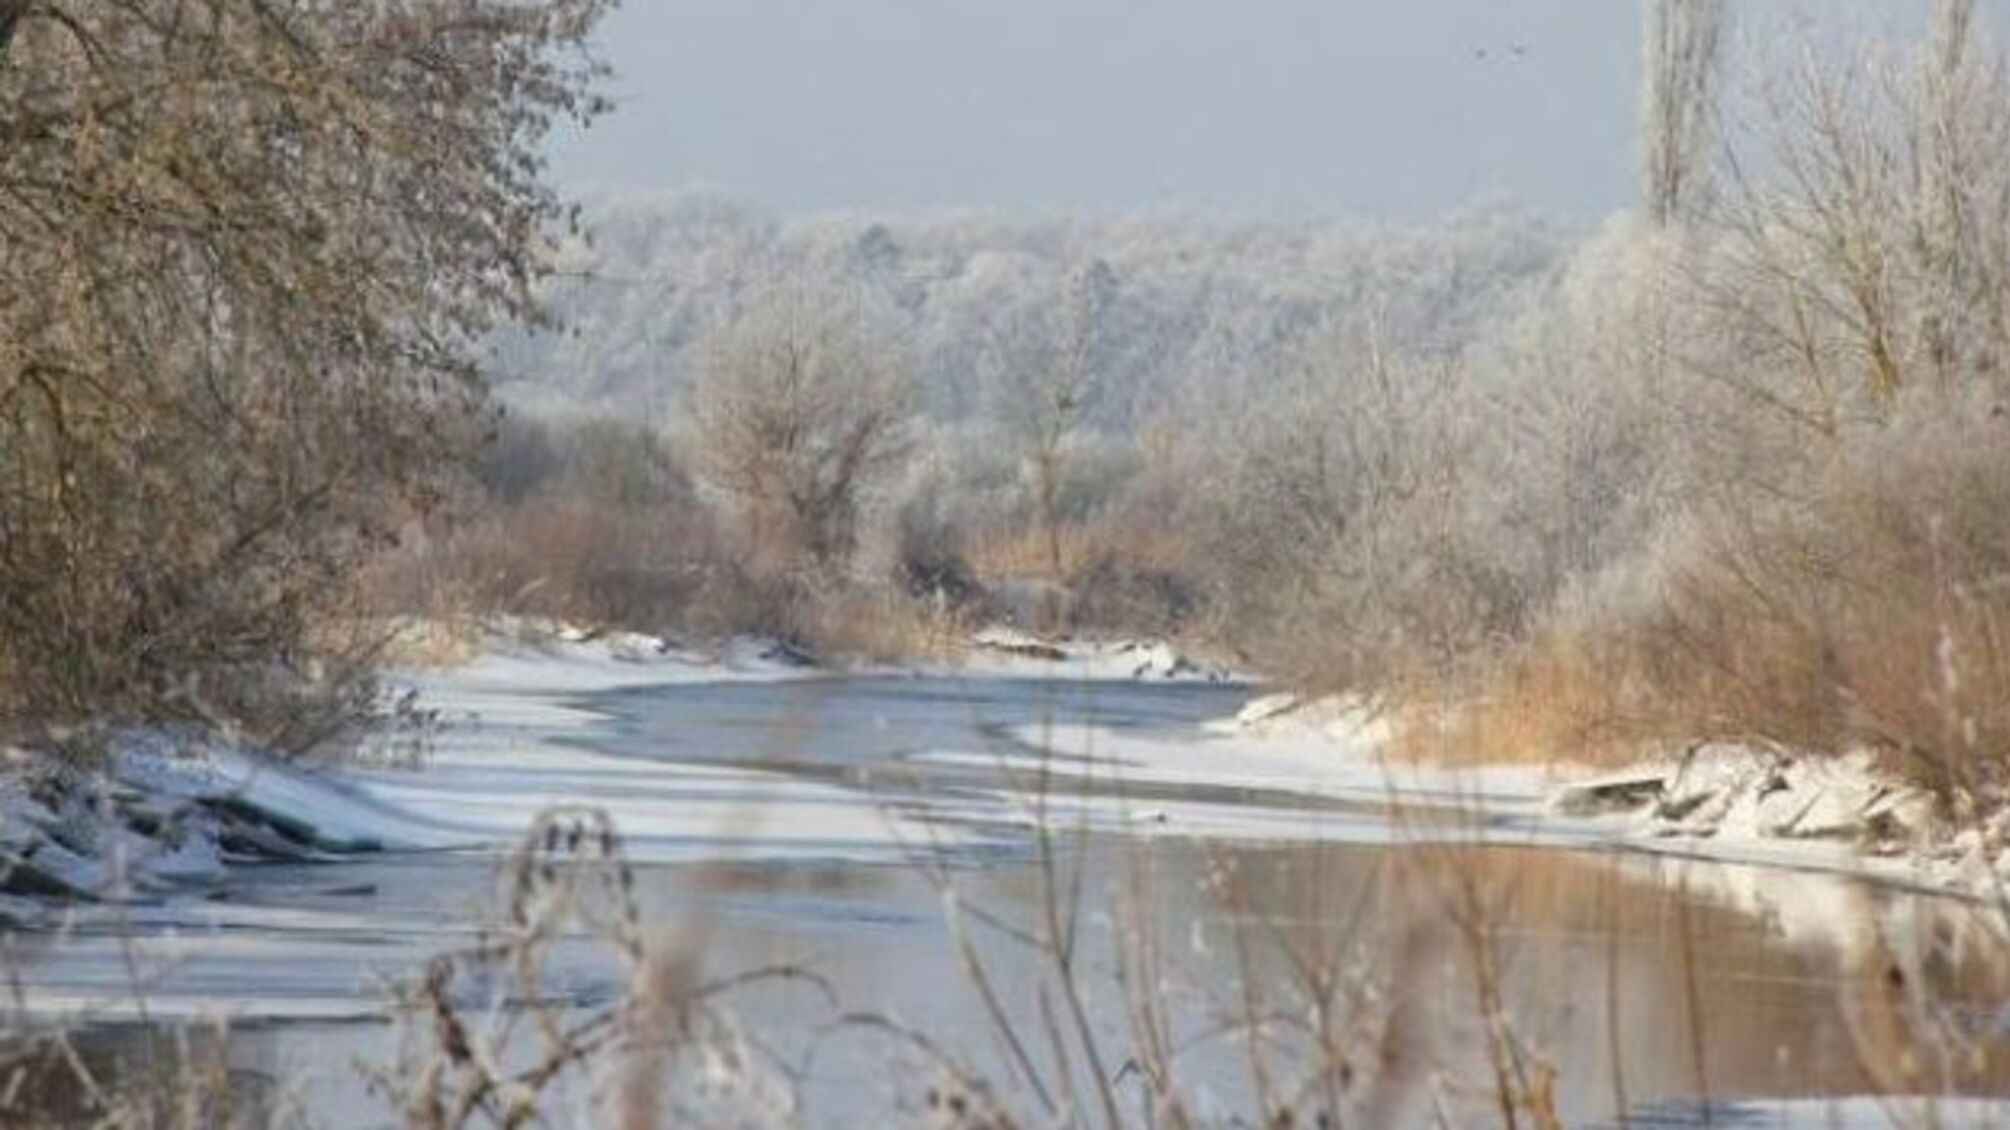 На річках України – зменшення льодового покриву та підйом рівня води